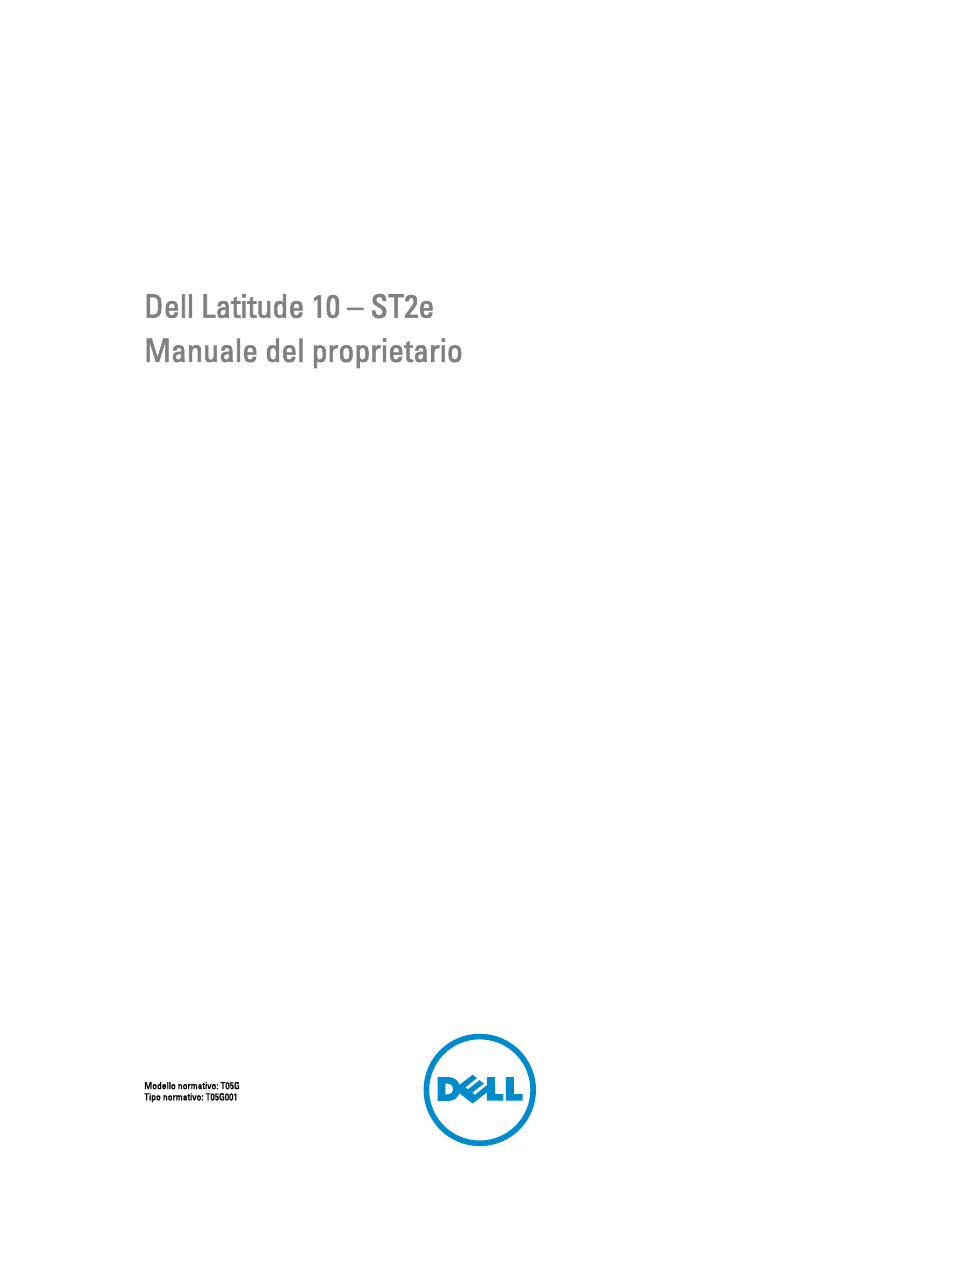 Dell Latitude 10e ST2E (Early 2013) Manuale d'uso | Pagine: 39